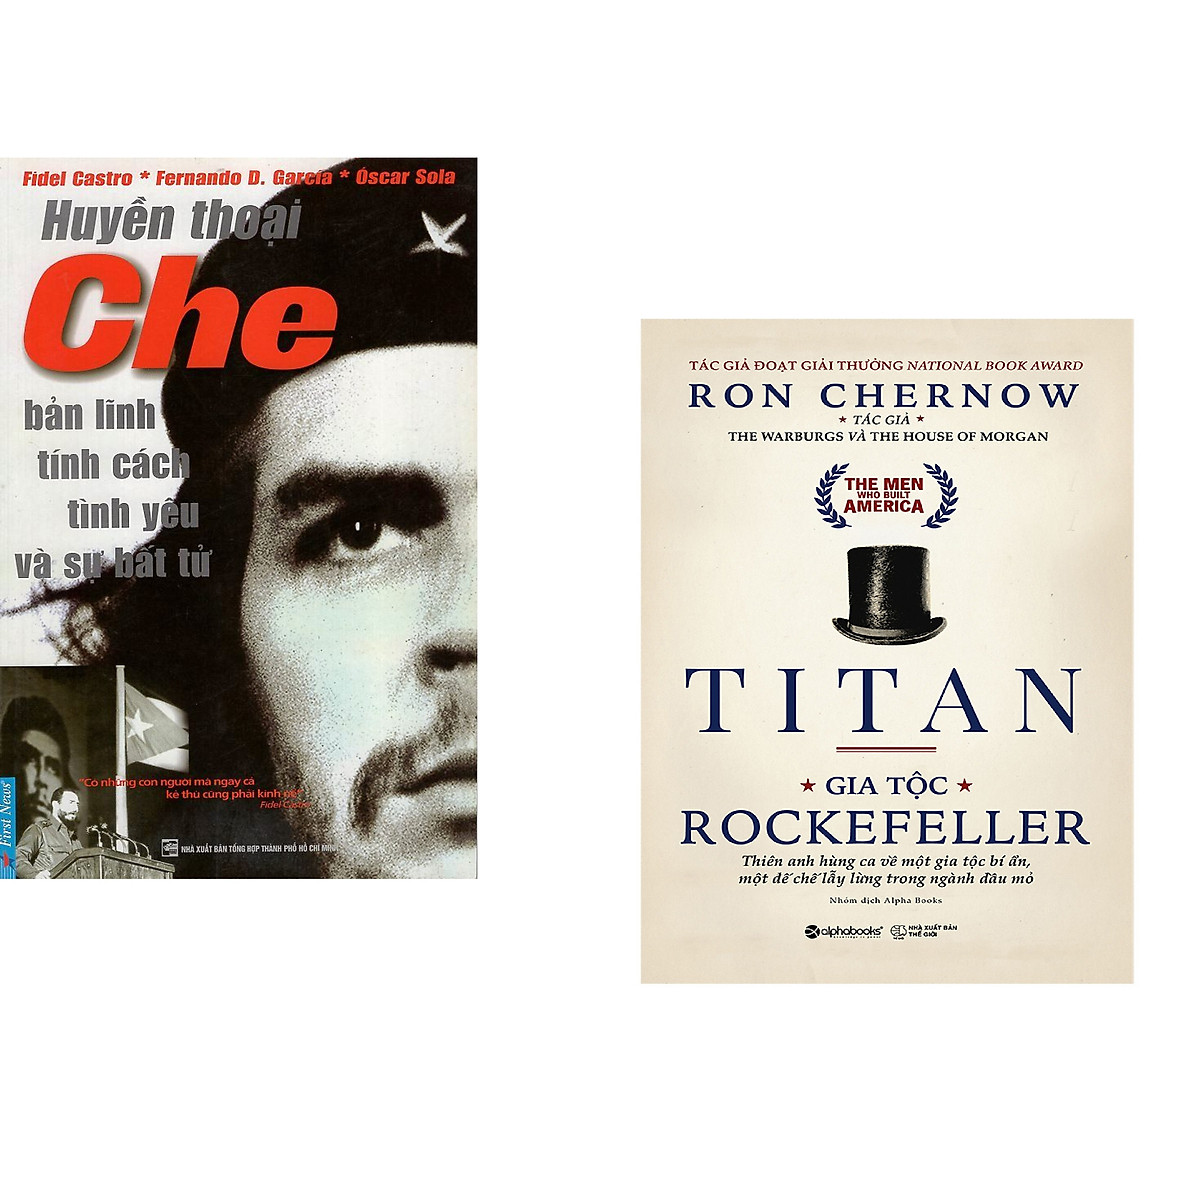 Combo 2 cuốn sách: Huyền Thoại Che - Bản Lĩnh Tính Cách Tình Yêu & Sự Bất Tử + Titan - Gia Tộc Rockefeller